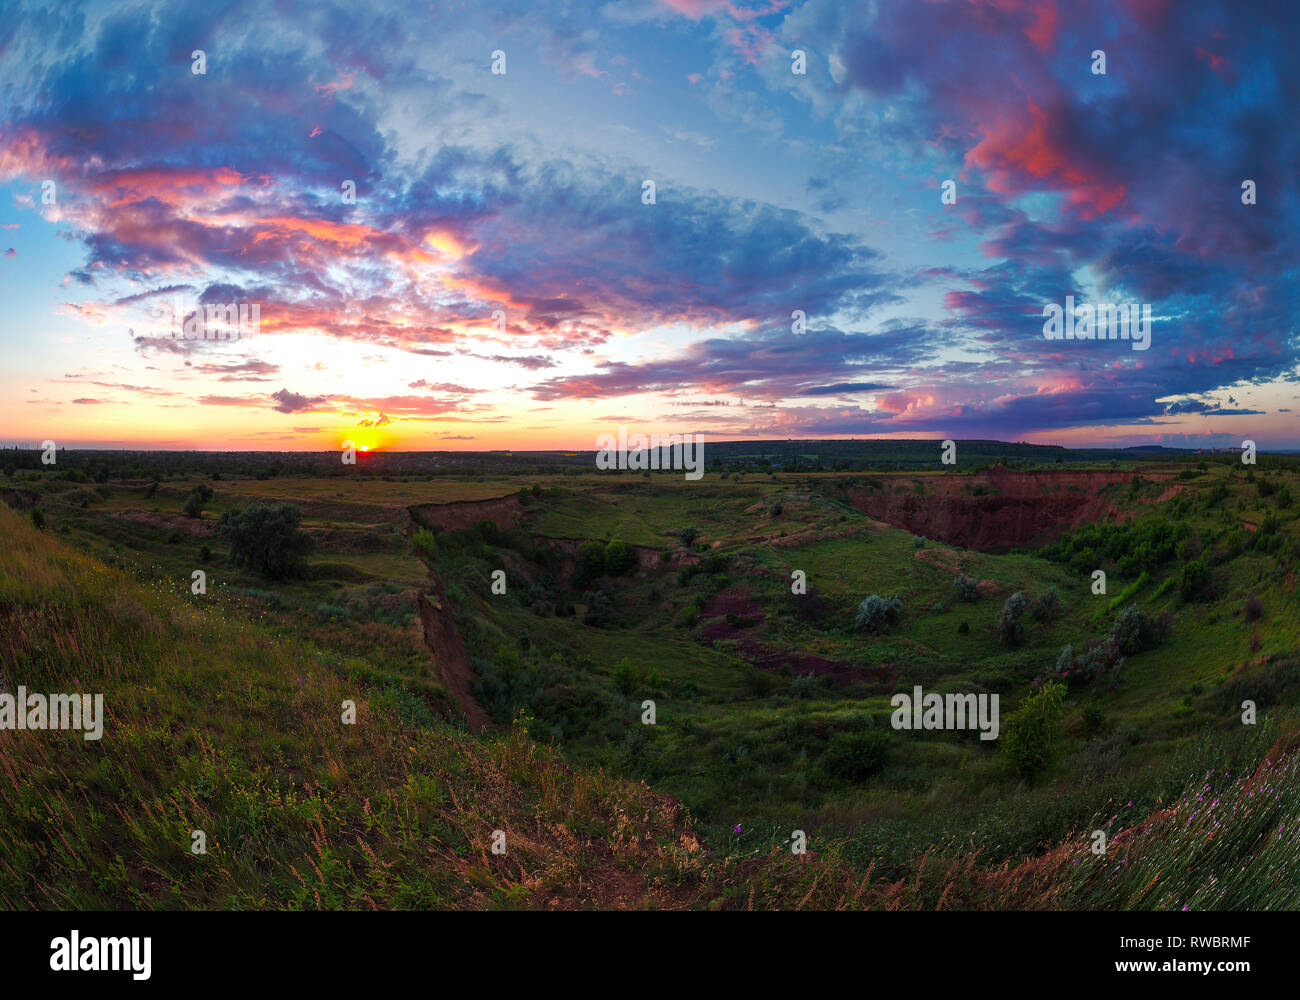 Helle Sommer bewölkter Sonnenuntergang über das grüne Tal. Abends outdoor. schöne Fotografie. Ukraine, Kriviy Rih. Ländliche weite Landschaft Stockfoto